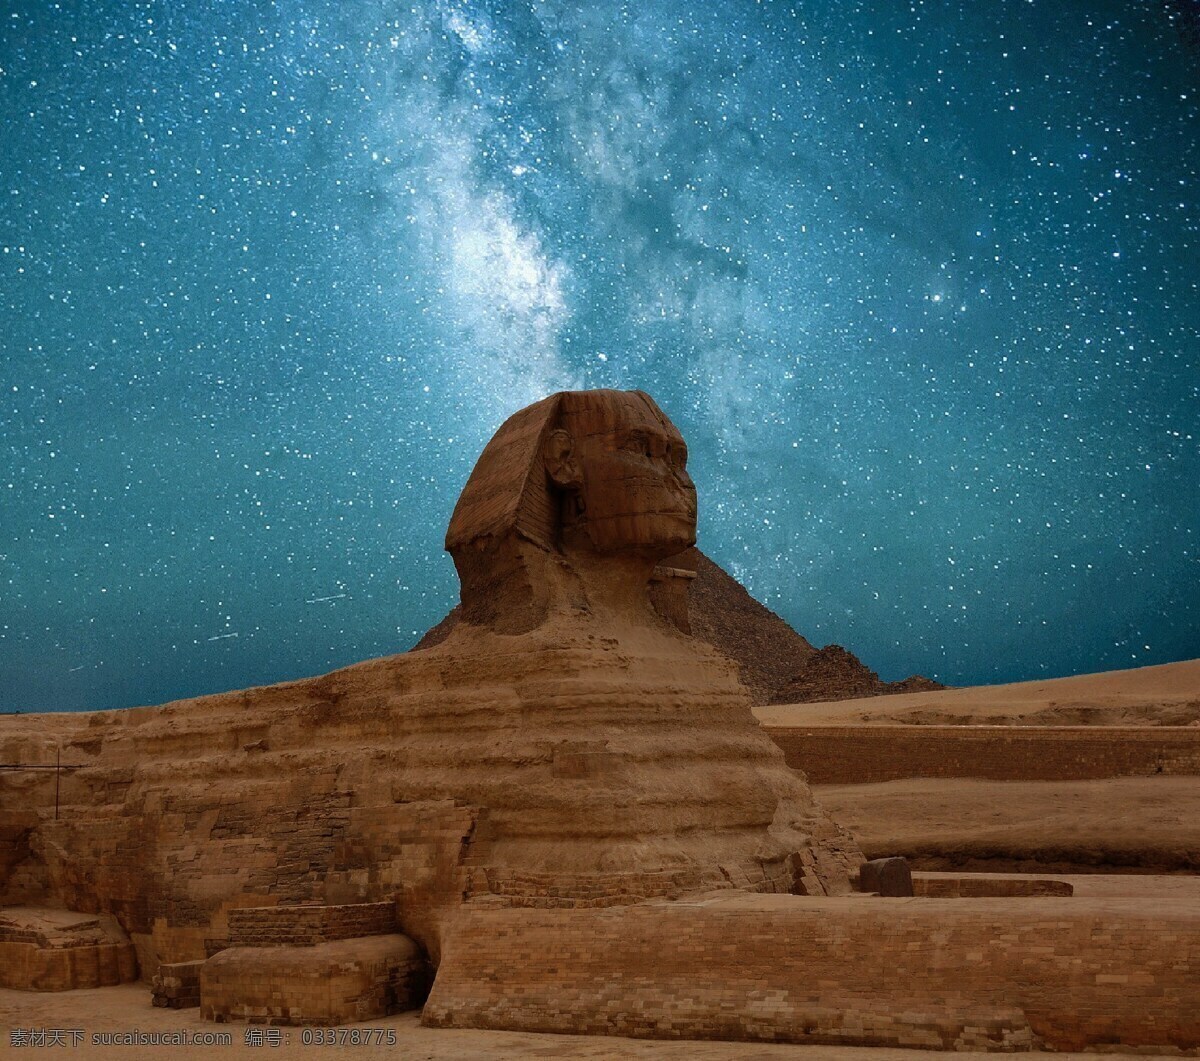 狮身人面像 金字塔 历史古迹 古埃及 埃及文明 旅游摄影 人文景观